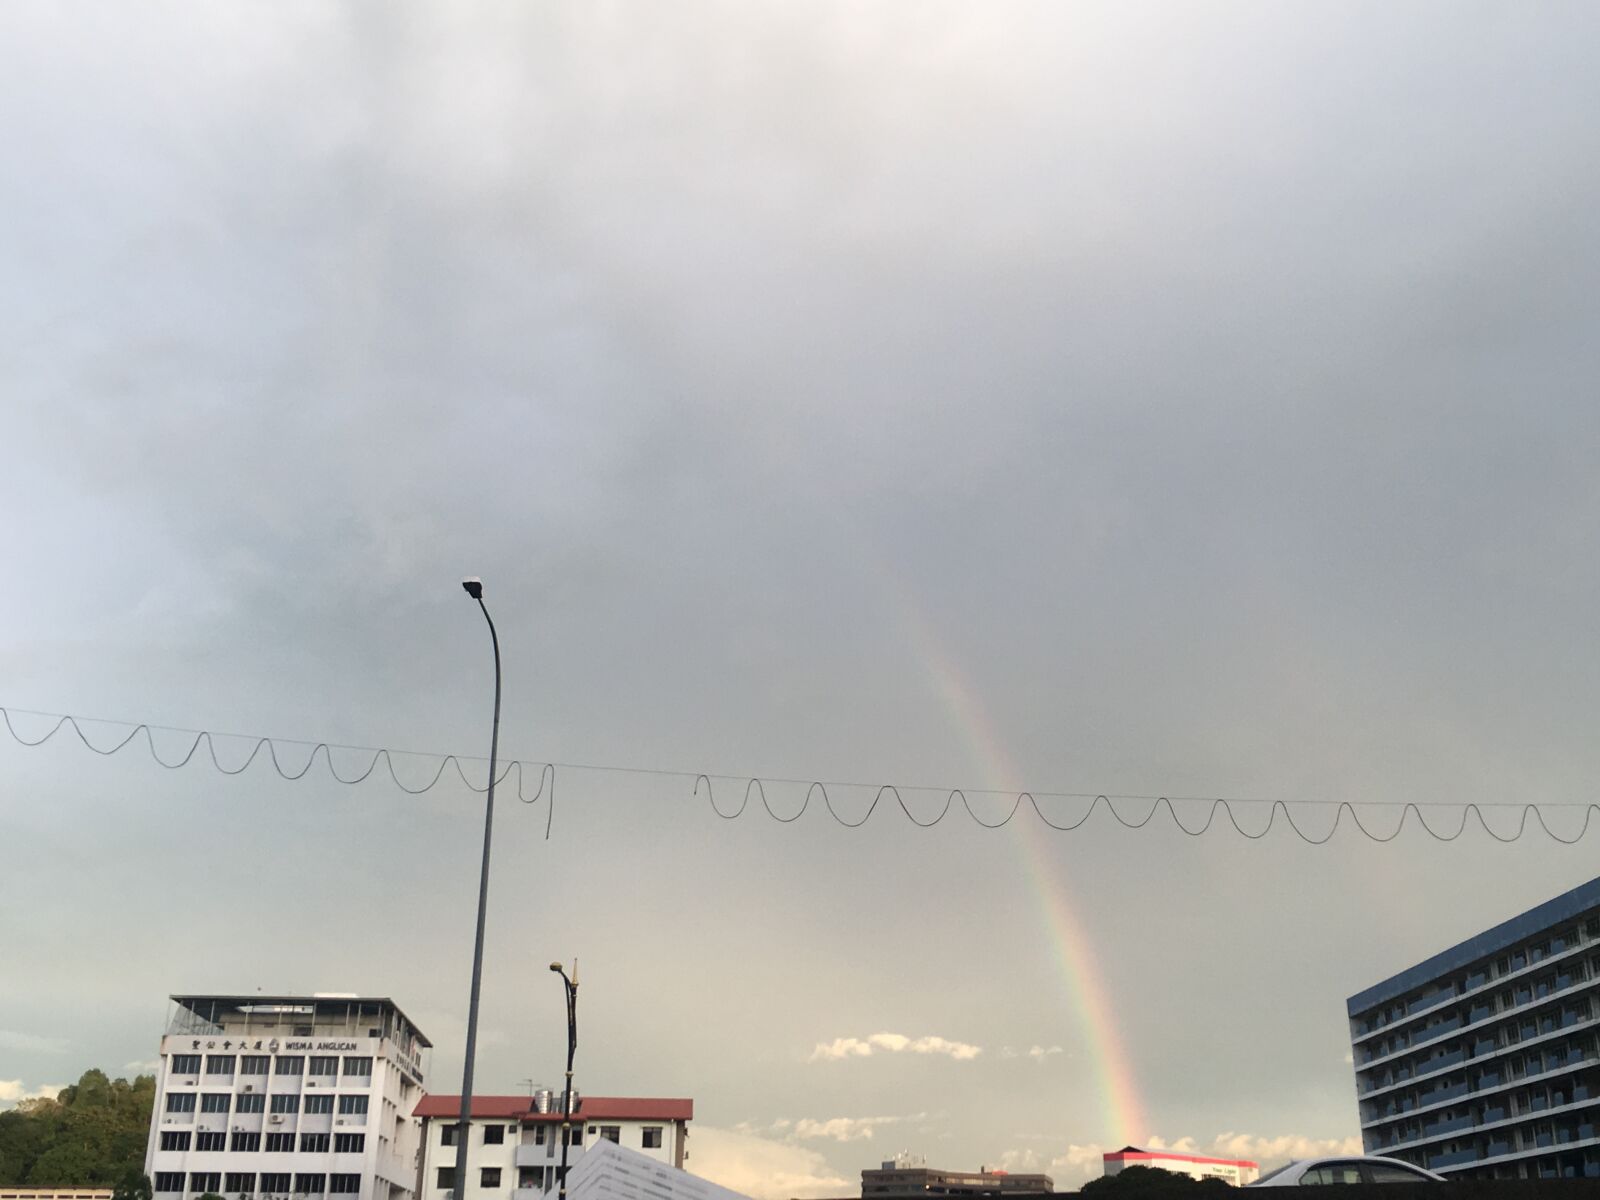 Apple iPhone 6s sample photo. Rainbow, sky, house photography